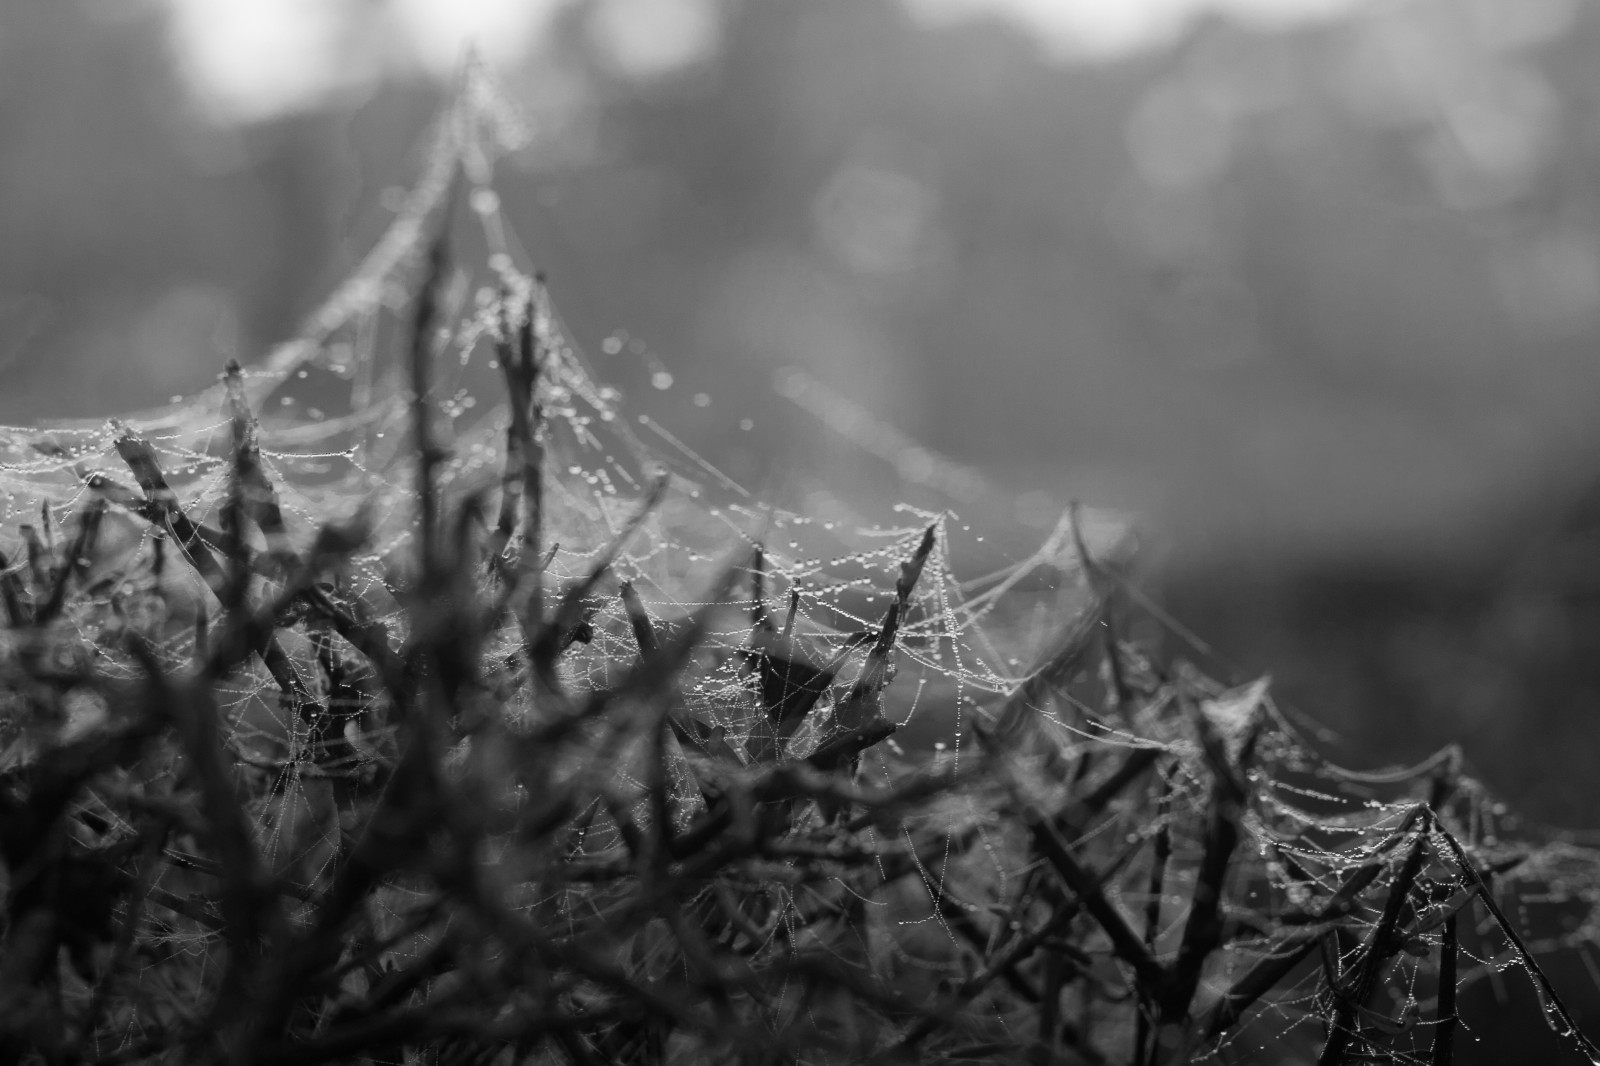 spiderwebs in the dew